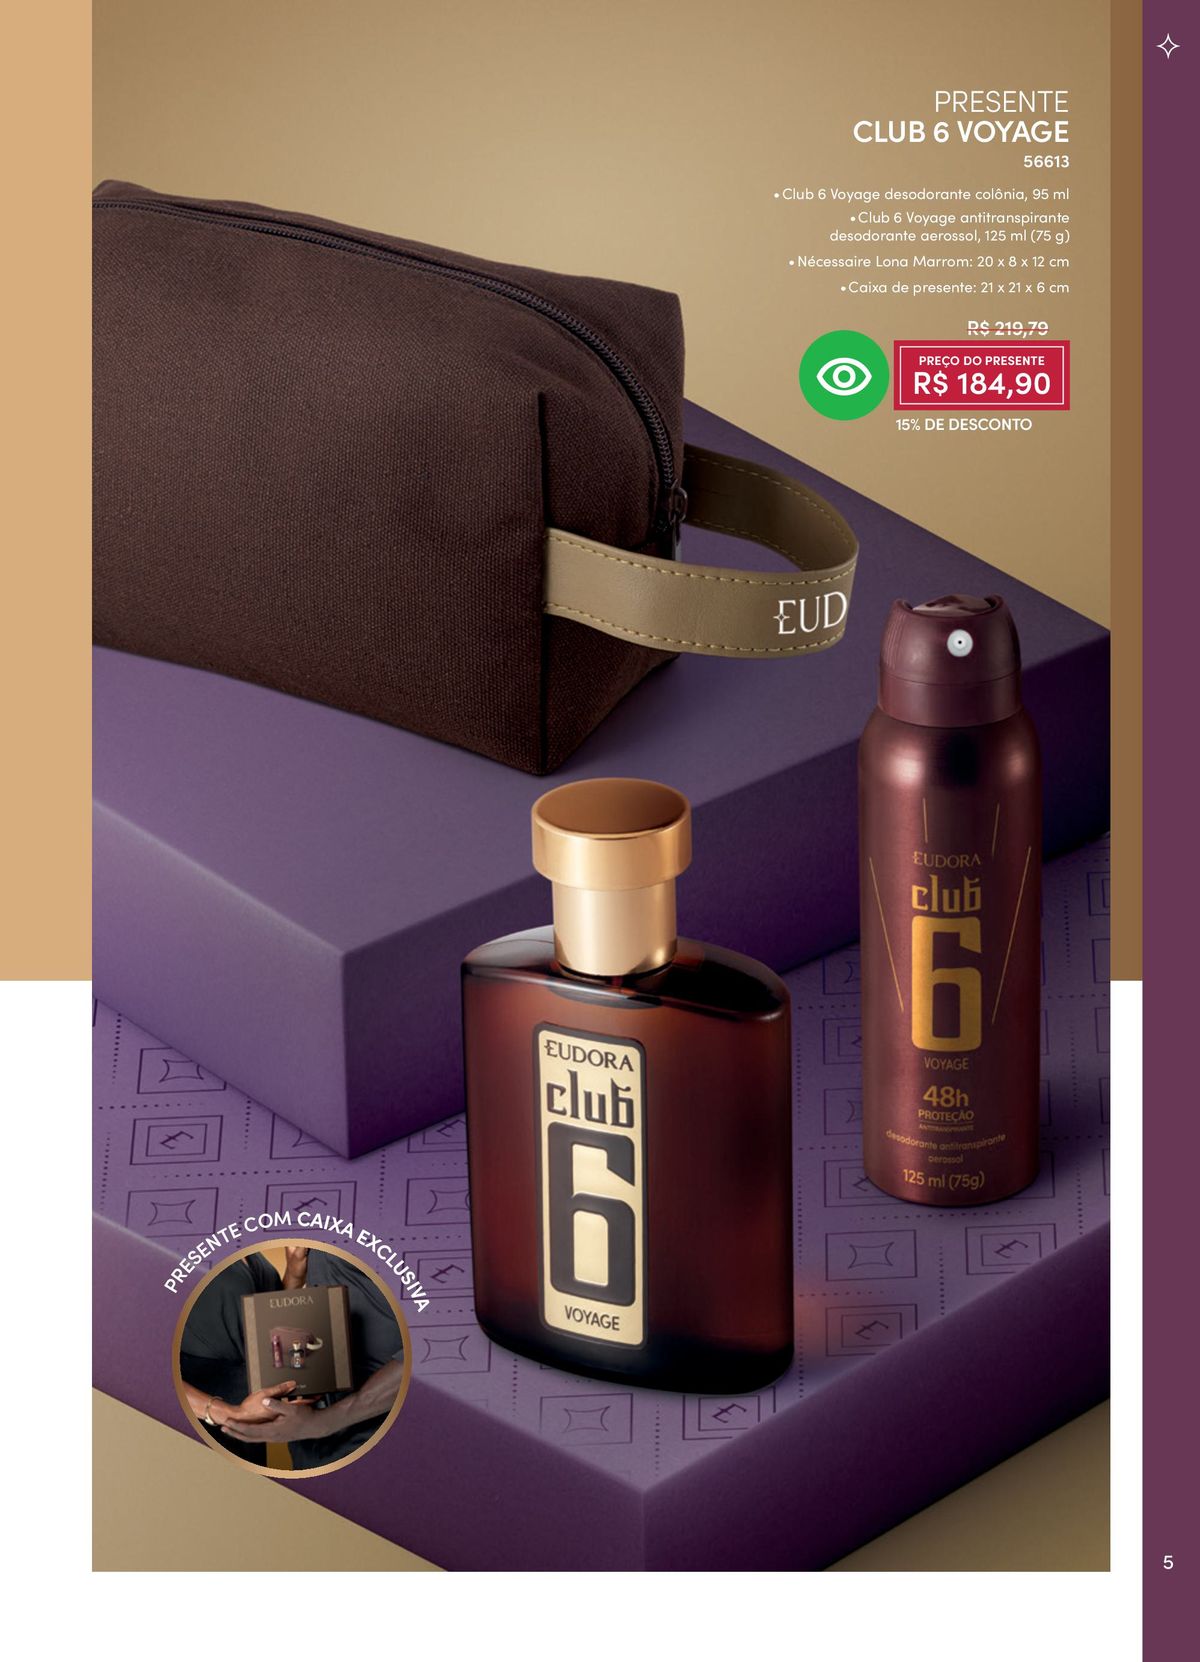 Desodorante antitranspirante Club 6 Voyage com caixa de presente em promoção